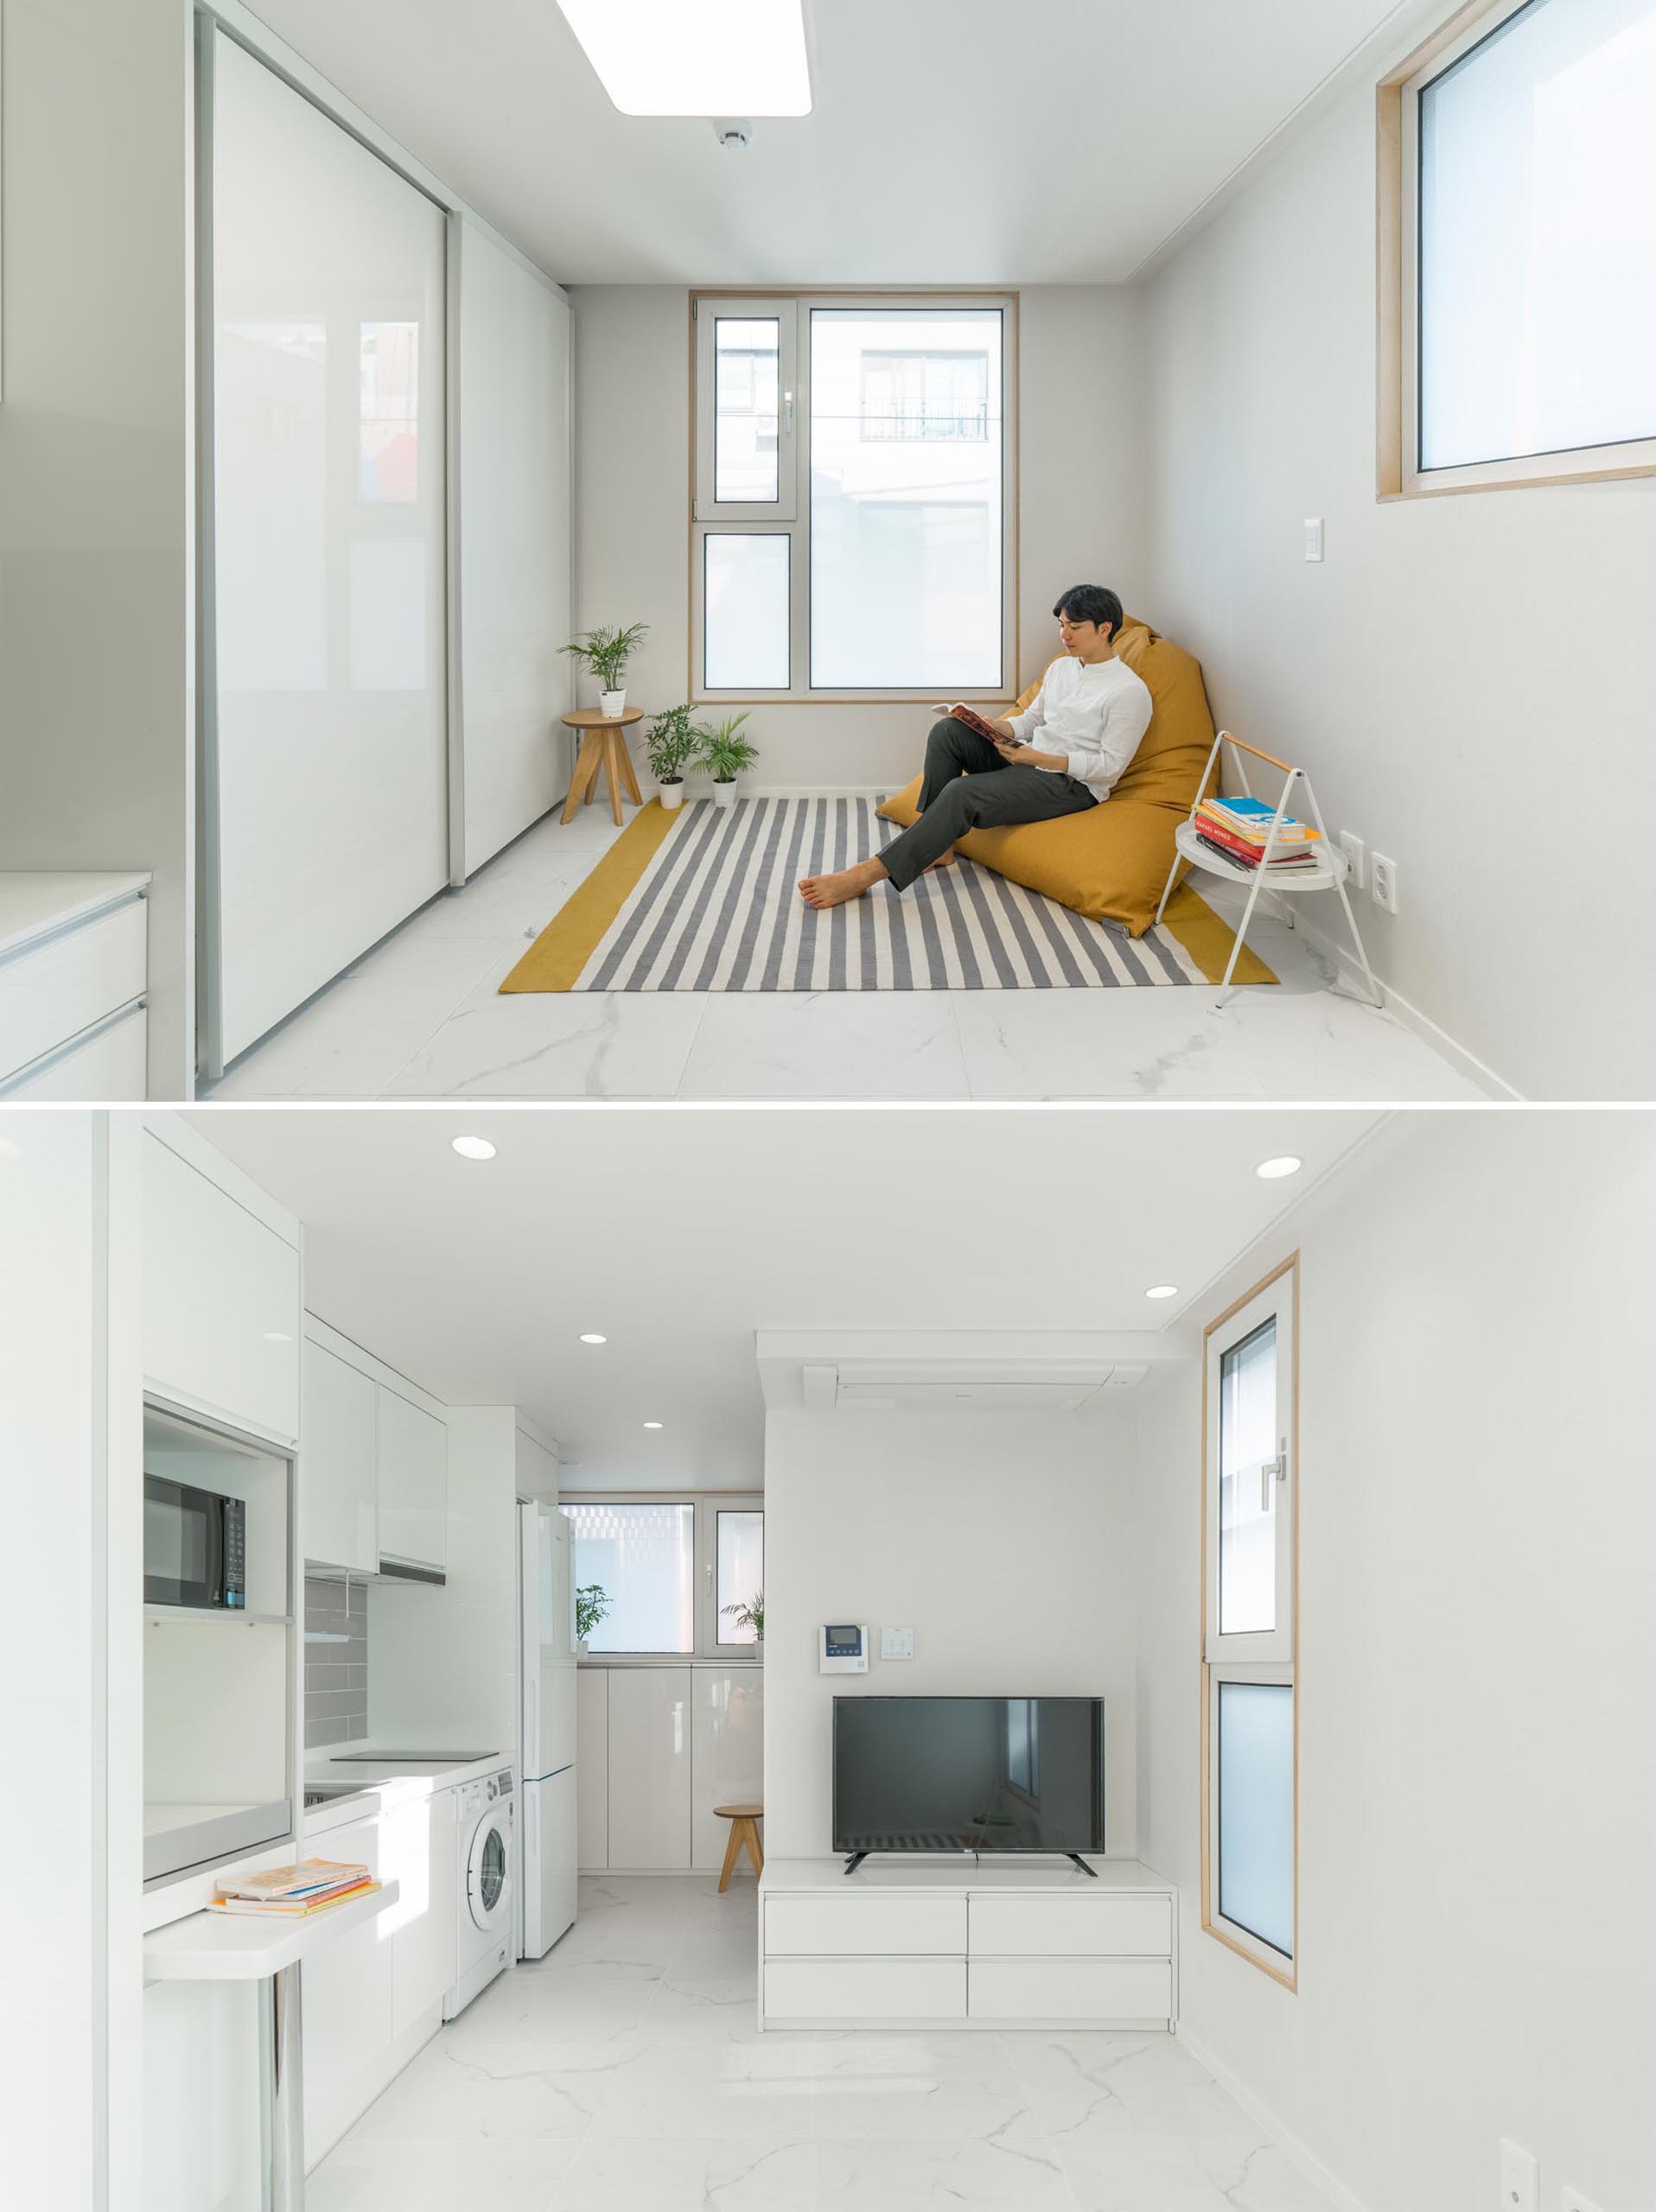 Nội thất căn hộ tối giản màu trắng.